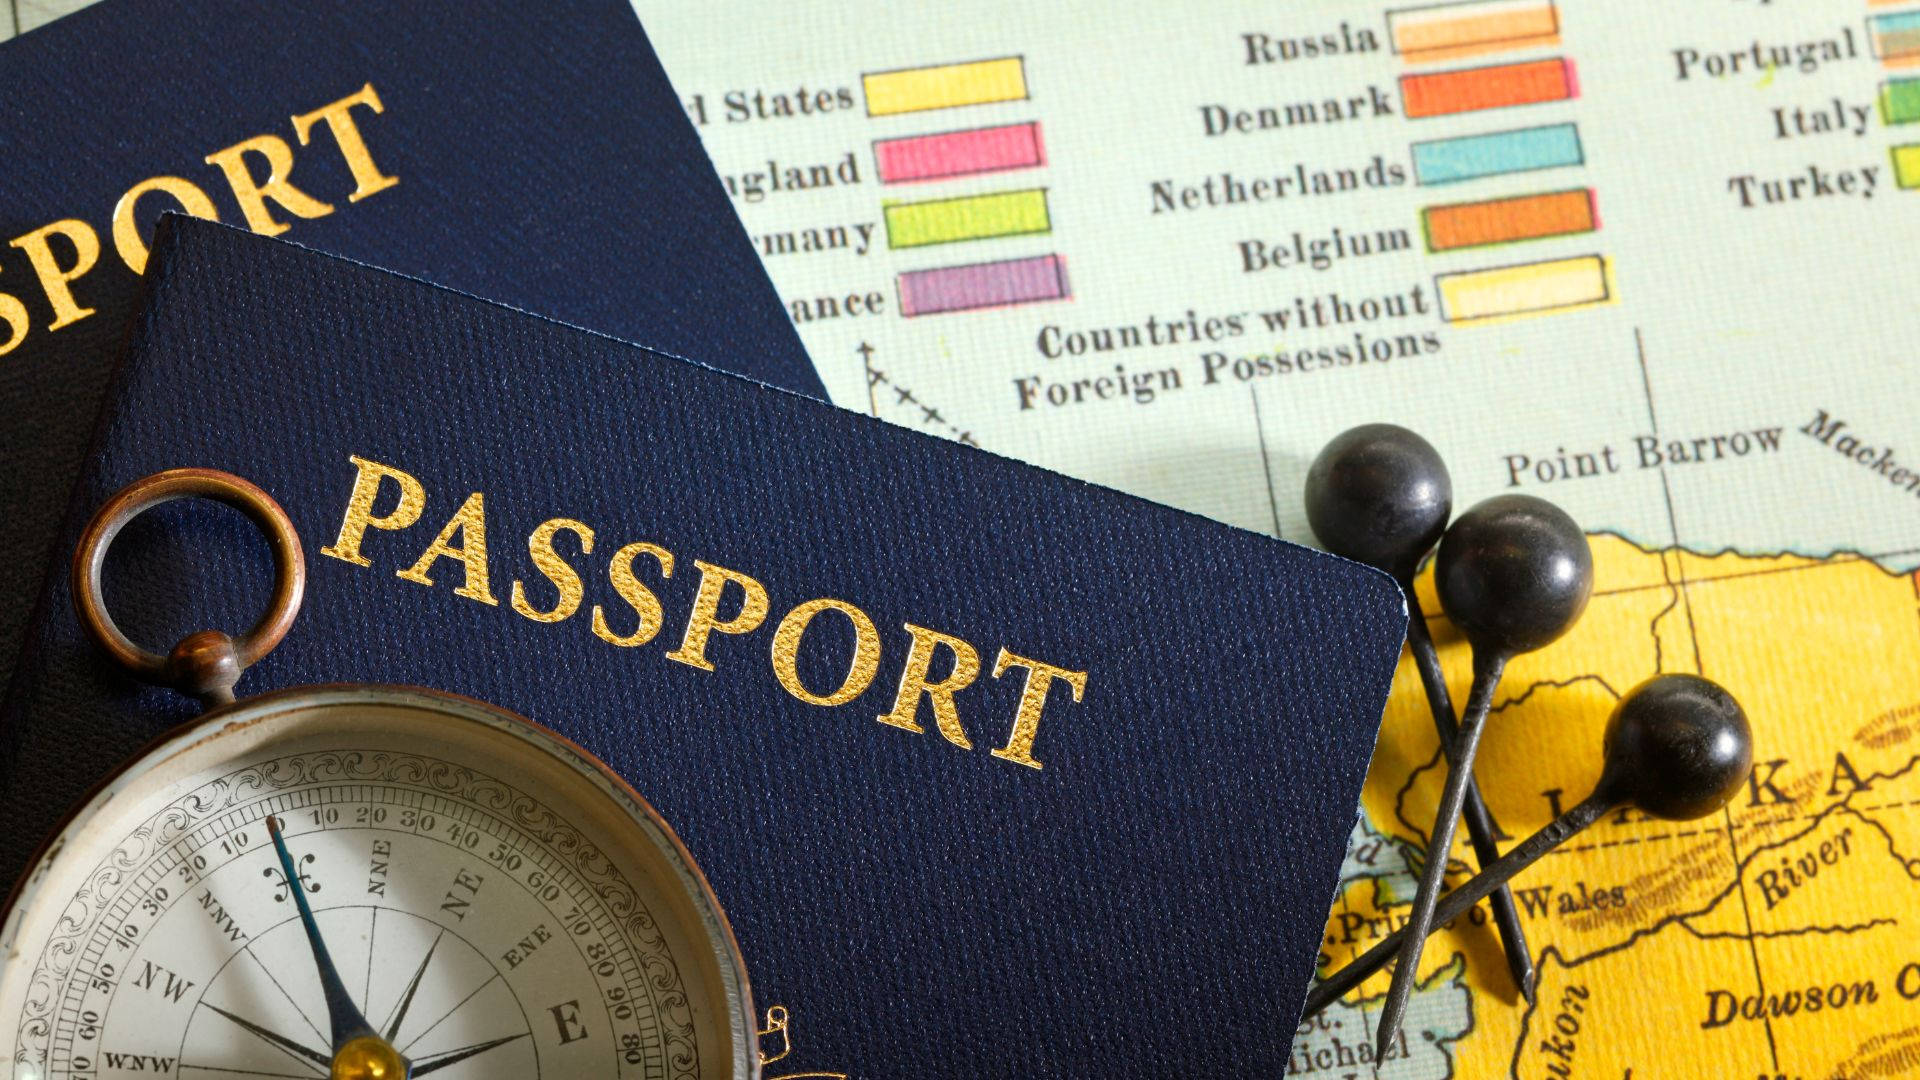 Passaportecom Bússola Papel de Parede